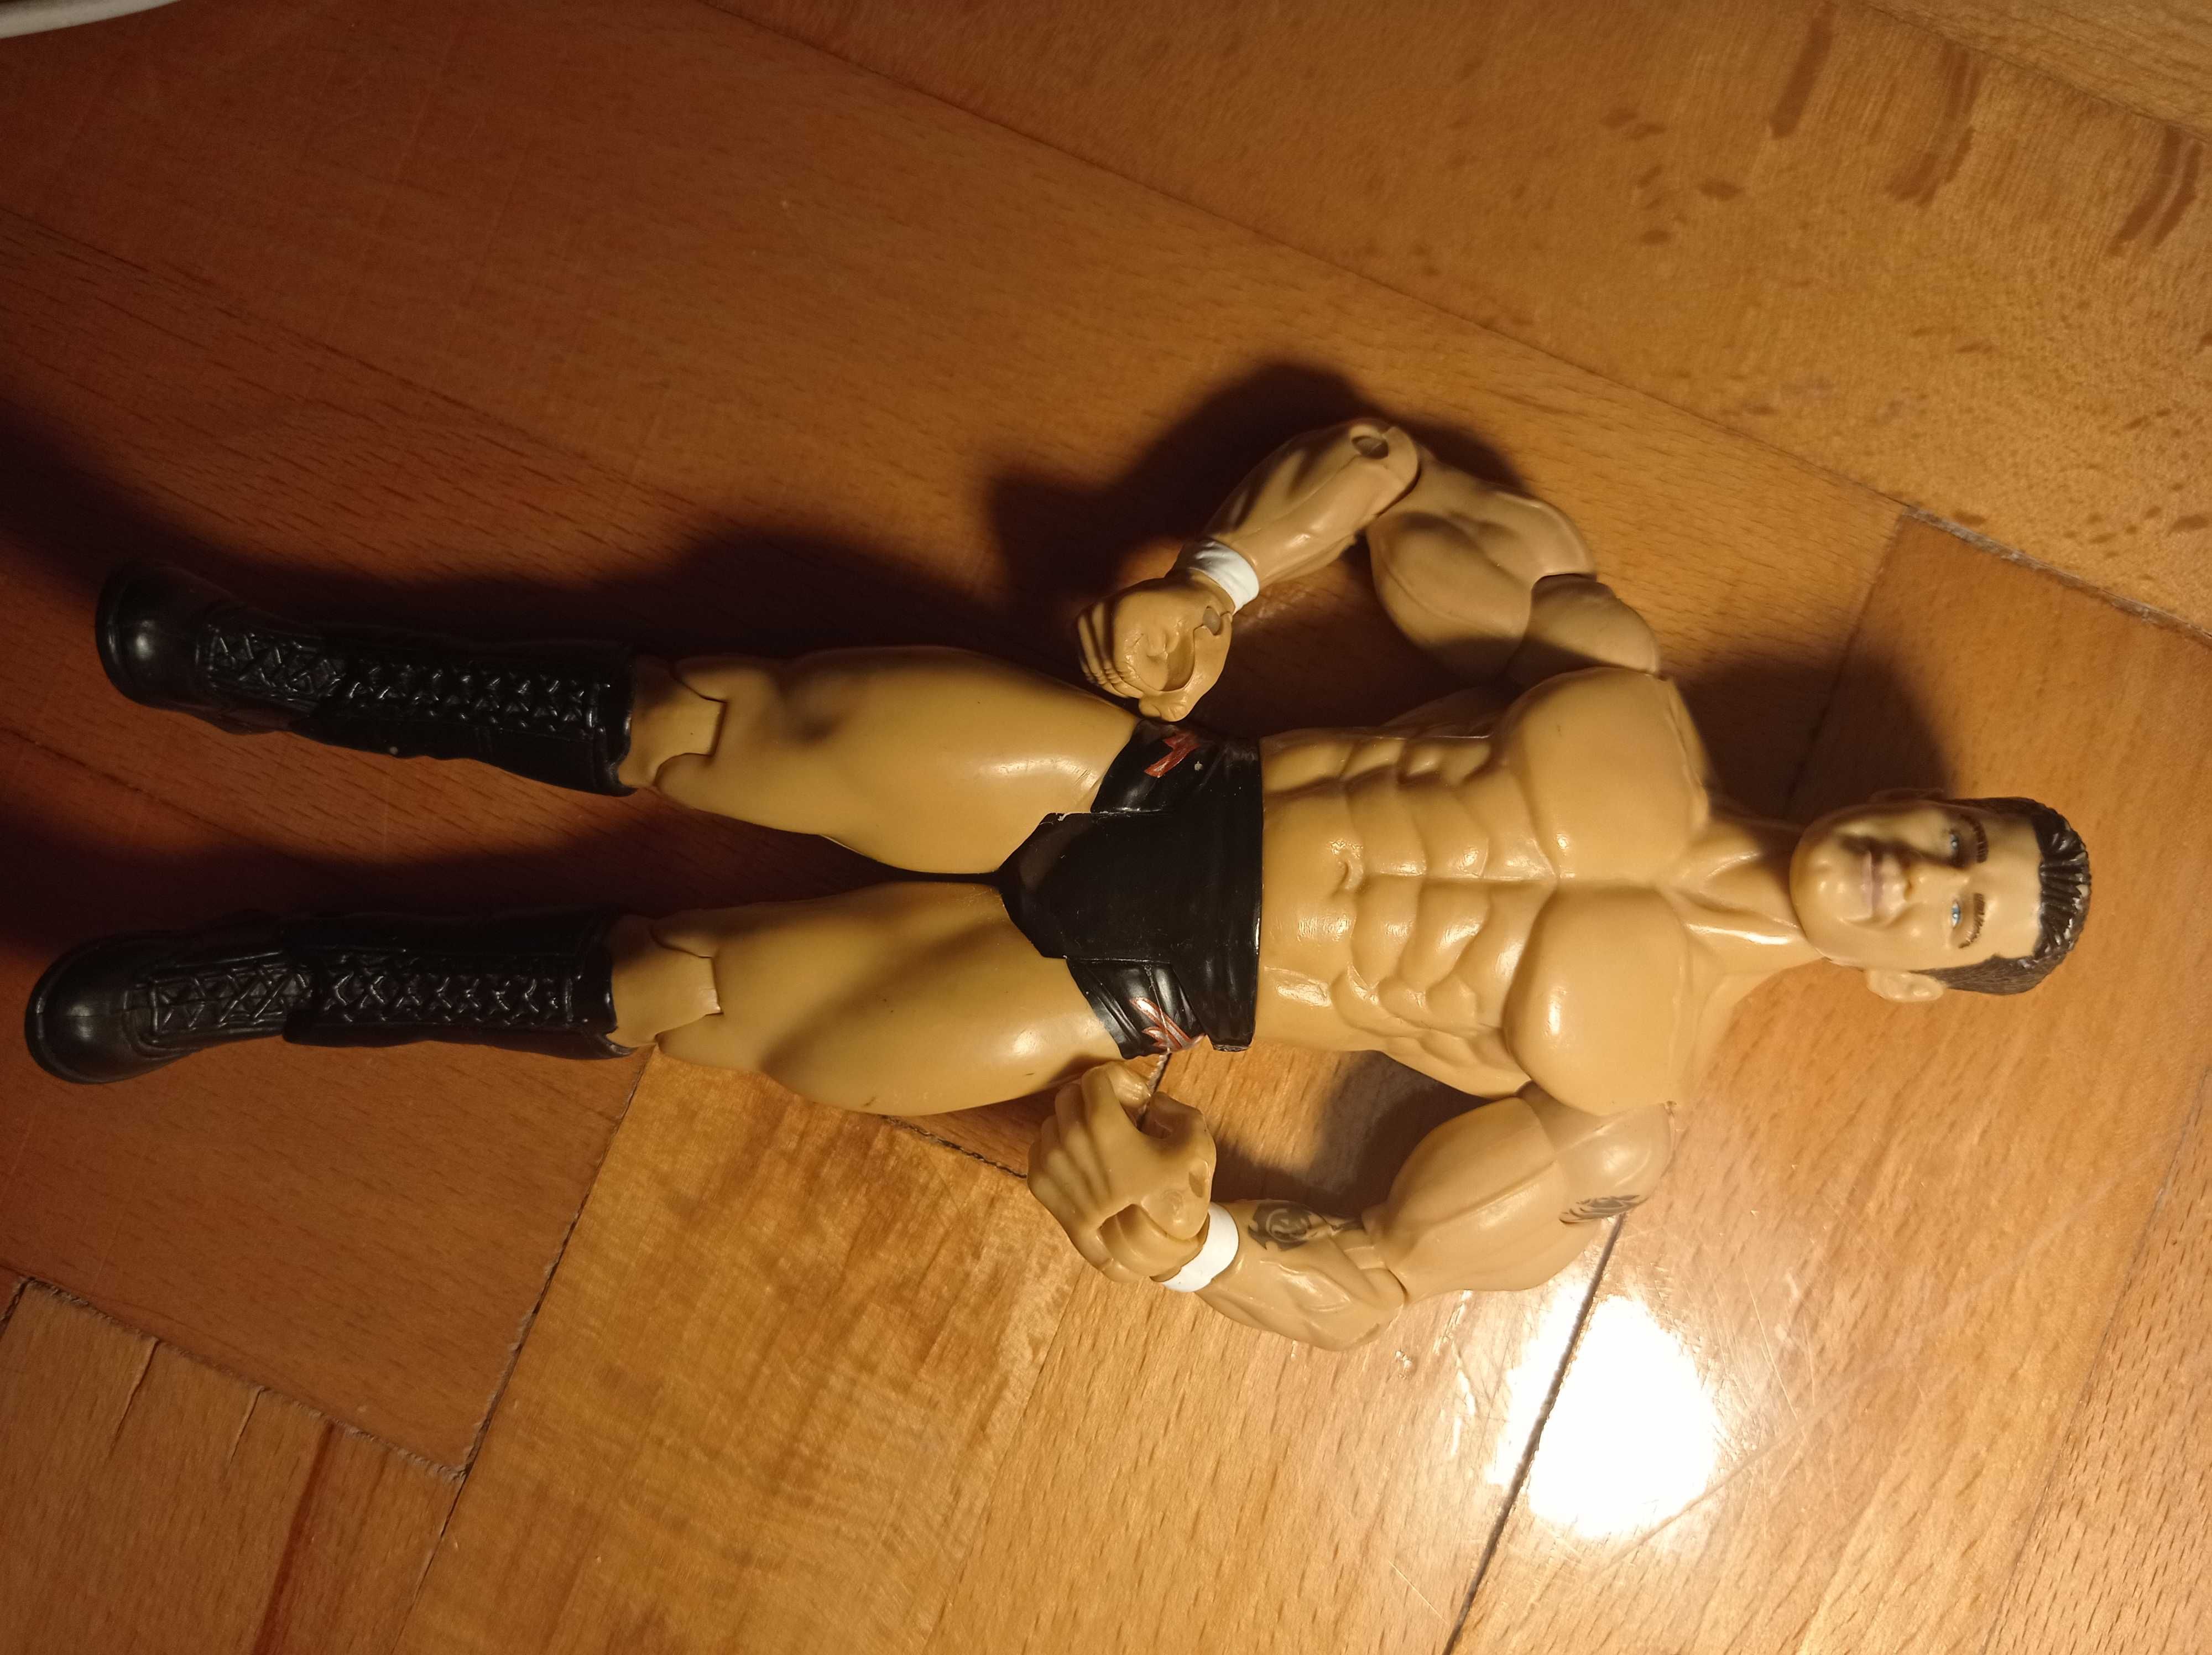 Figurka Randy Orton WWF wrestler firmy Jakks Pacific z 2003 roku